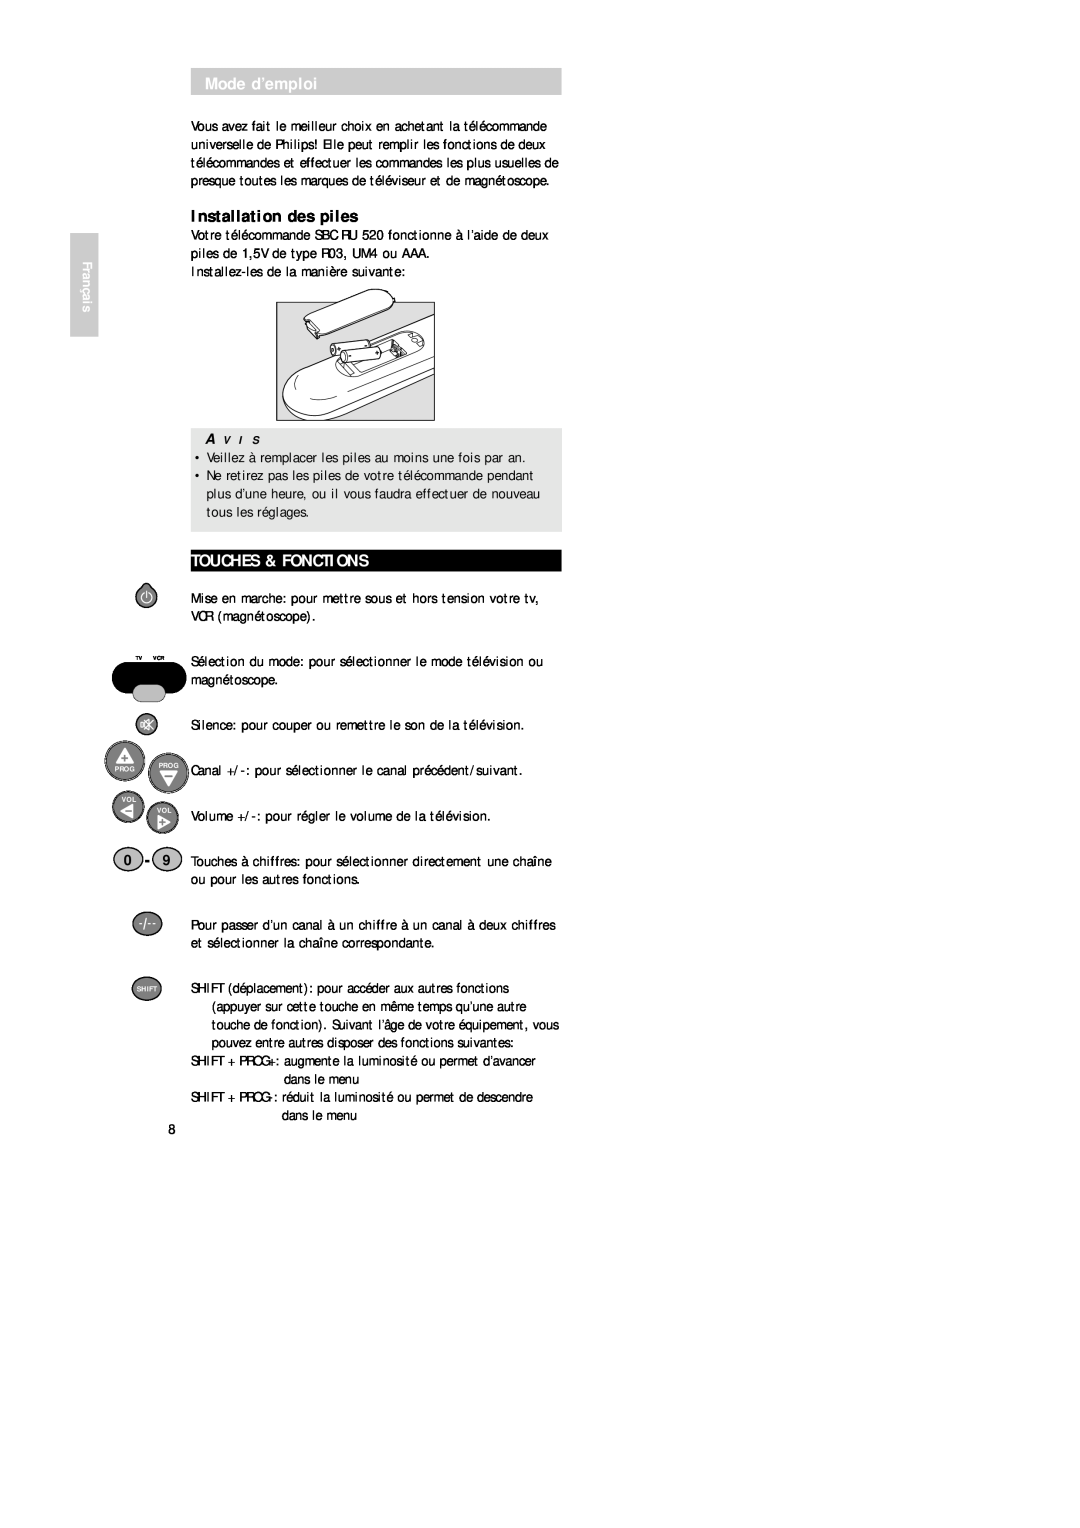 Philips SBC RU 520 manual Mode d’emploi, Installation des piles, Touches & Fonctions, Français, magnétoscope 